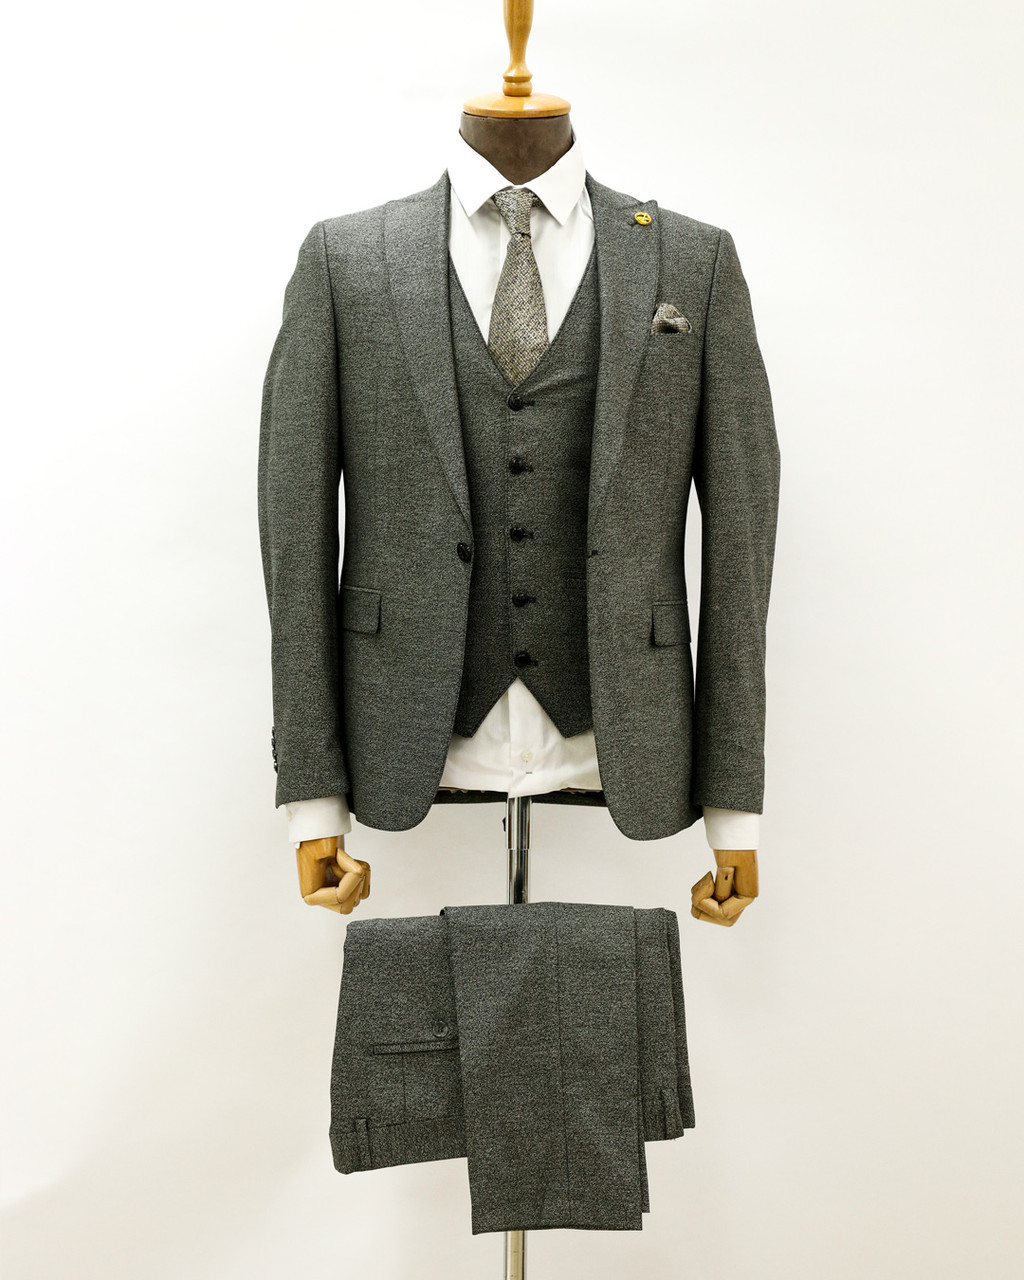 Мужской деловой костюм «UM&H 54820161» серый, фото 1